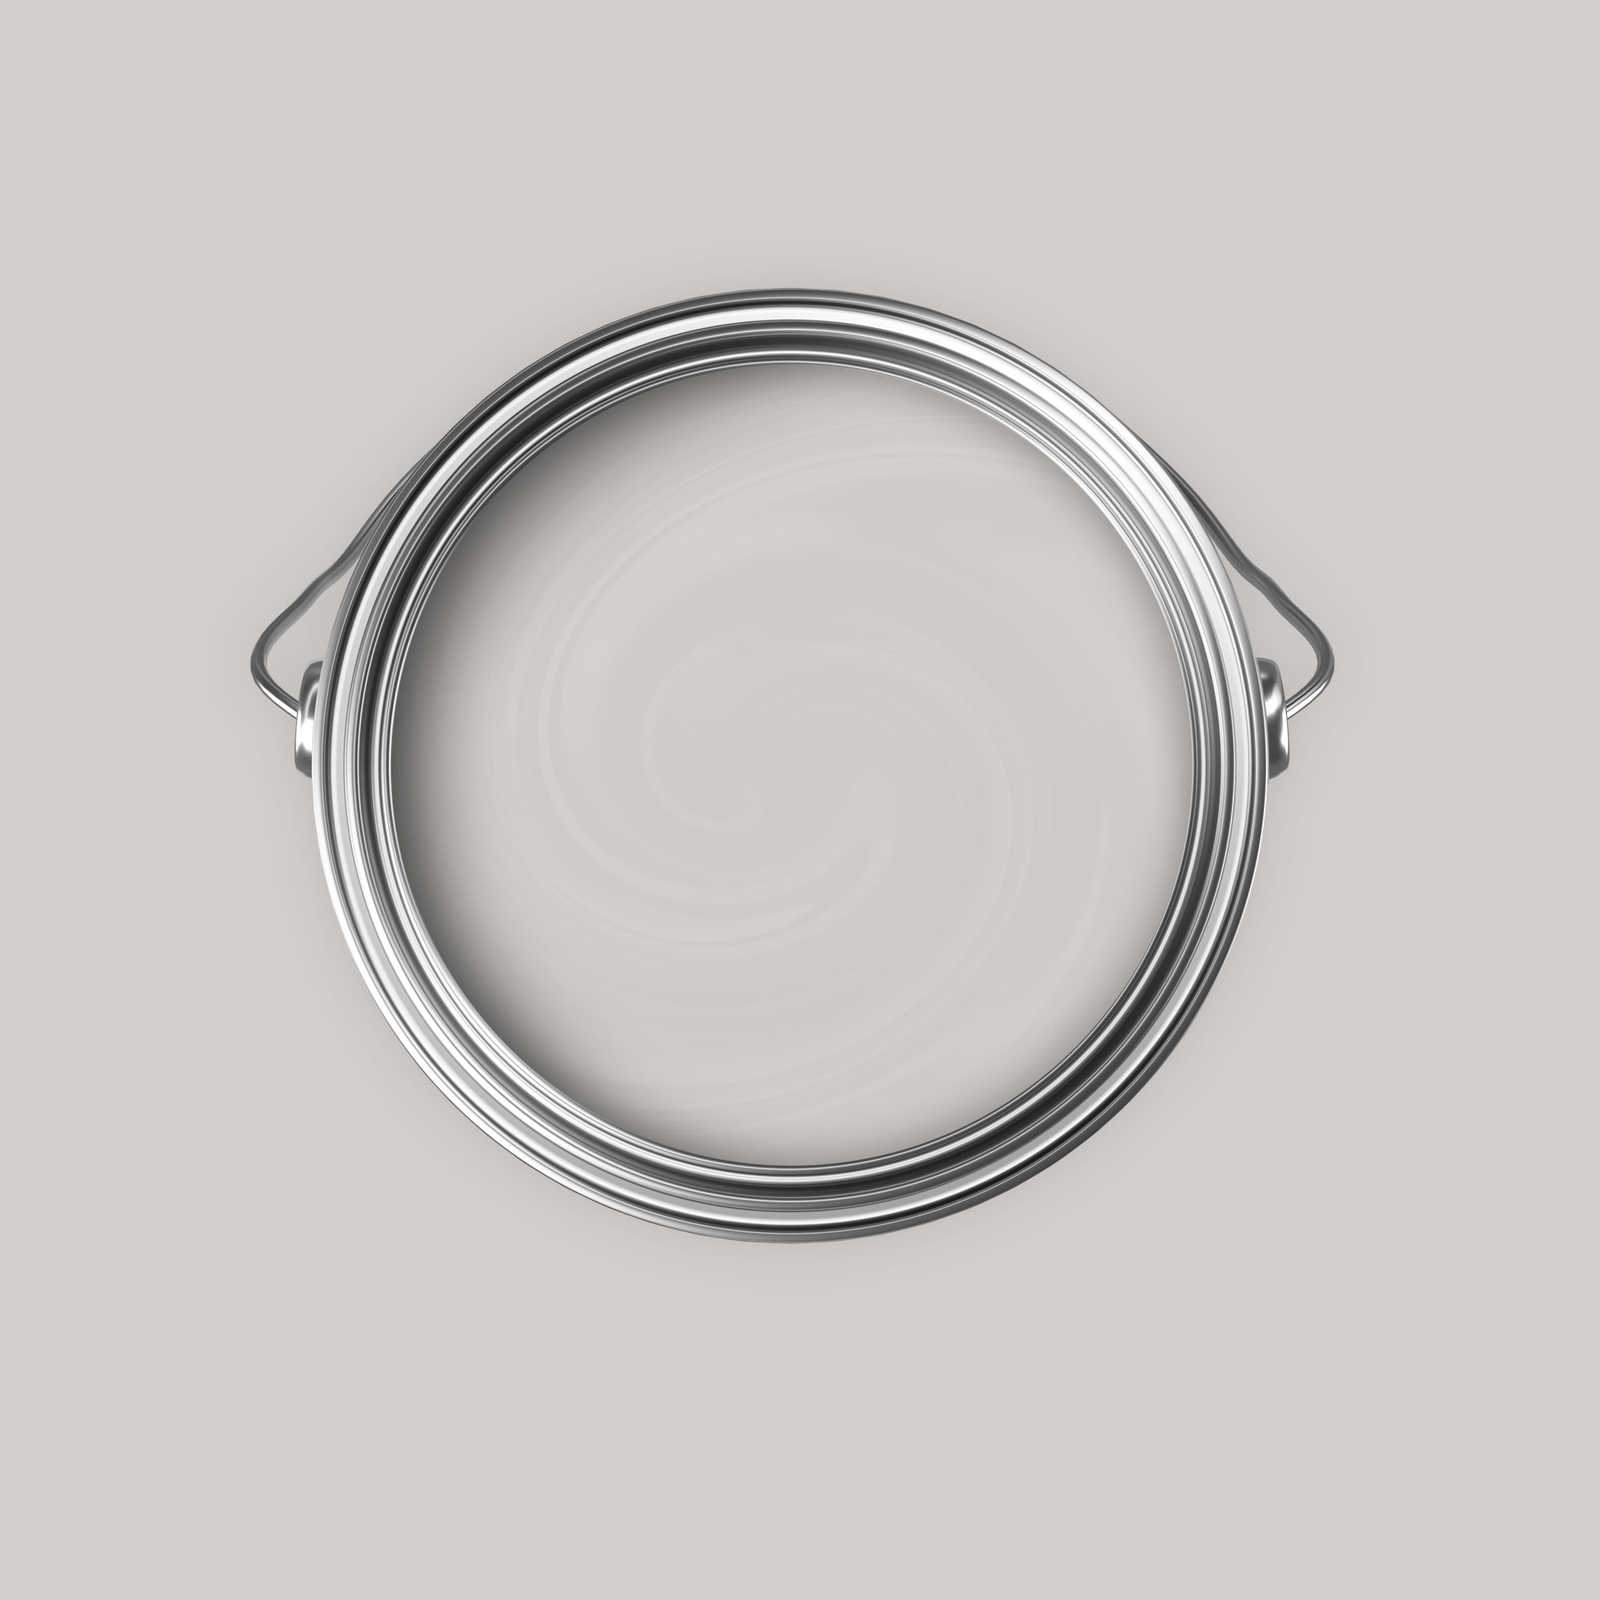             Premium Wandfarbe beruhigendes Hellgrau »Creamy Grey« NW110 – 5 Liter
        